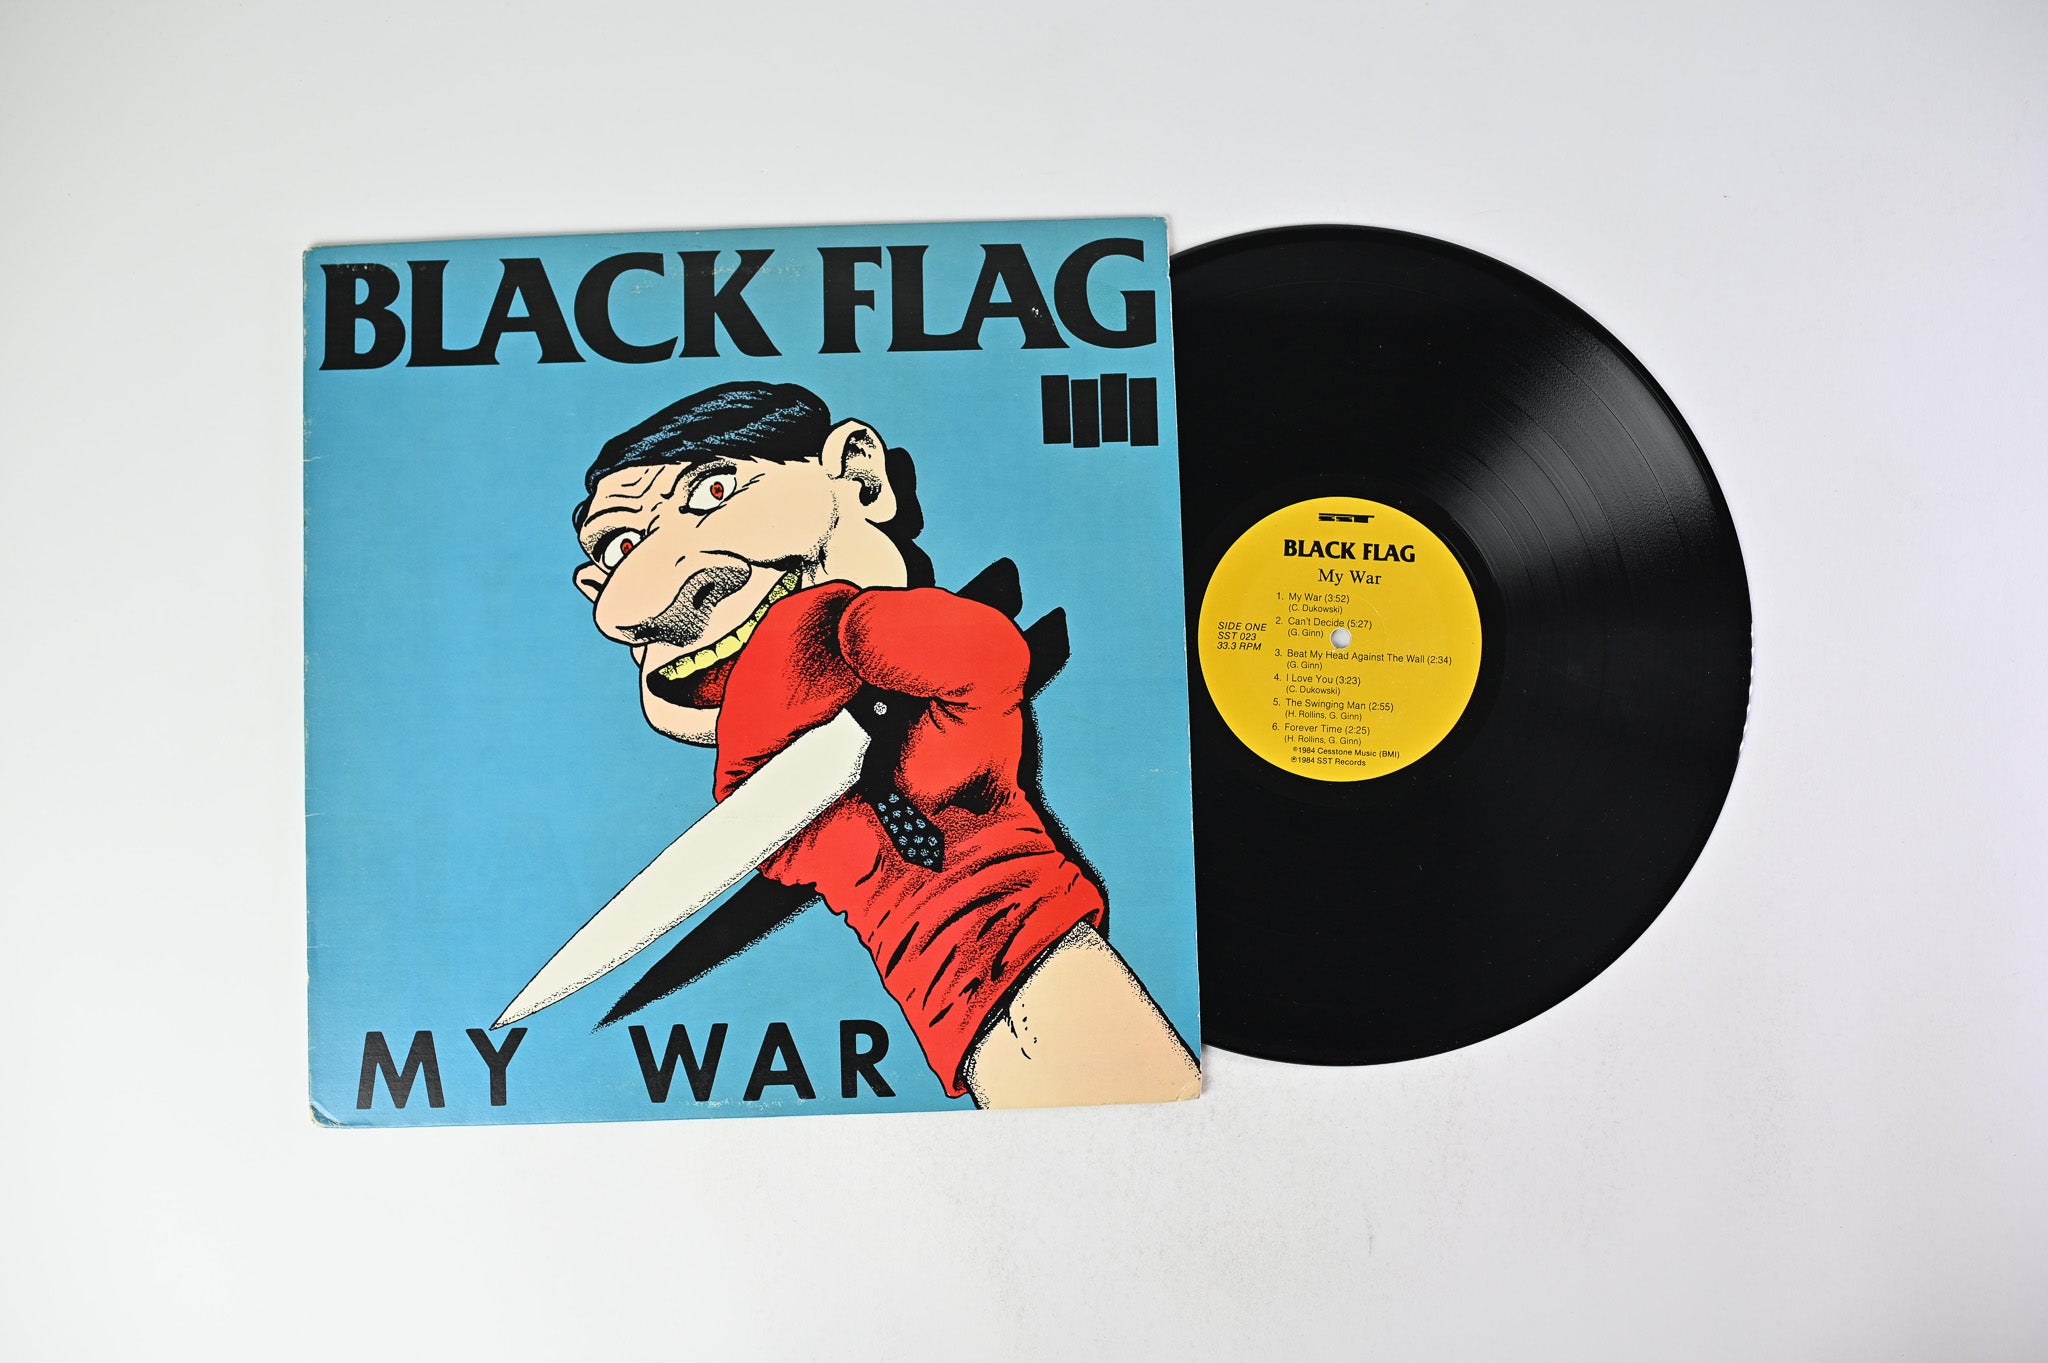 Black Flag - My War on SST Records Misprint